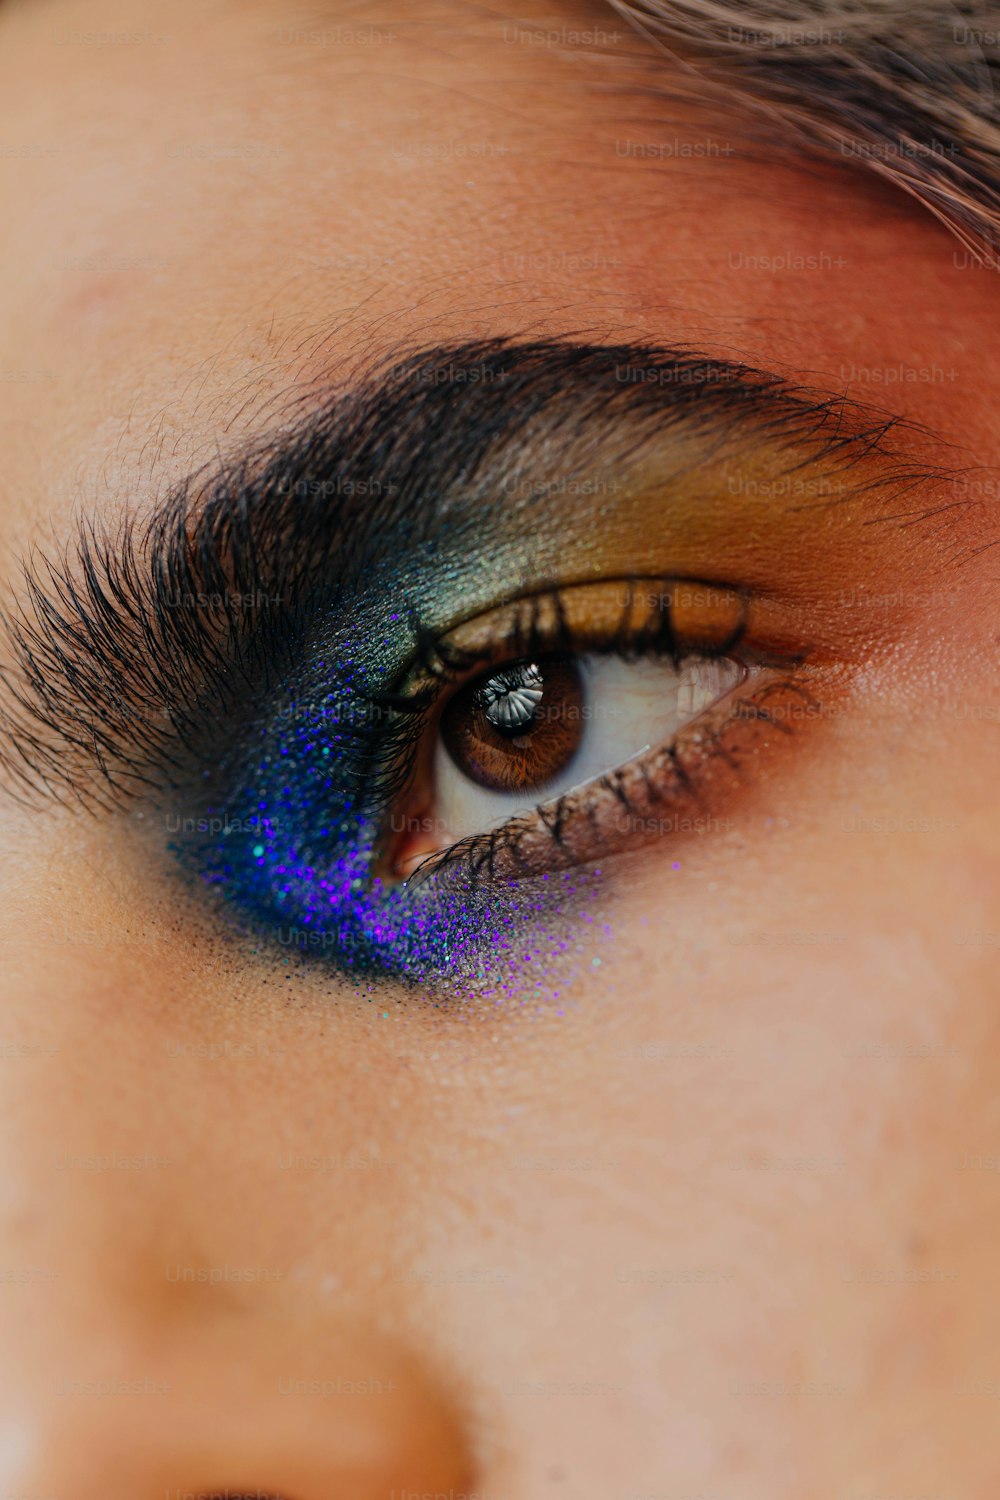 Un primer plano del ojo de una persona con una sombra de ojos azul y amarilla